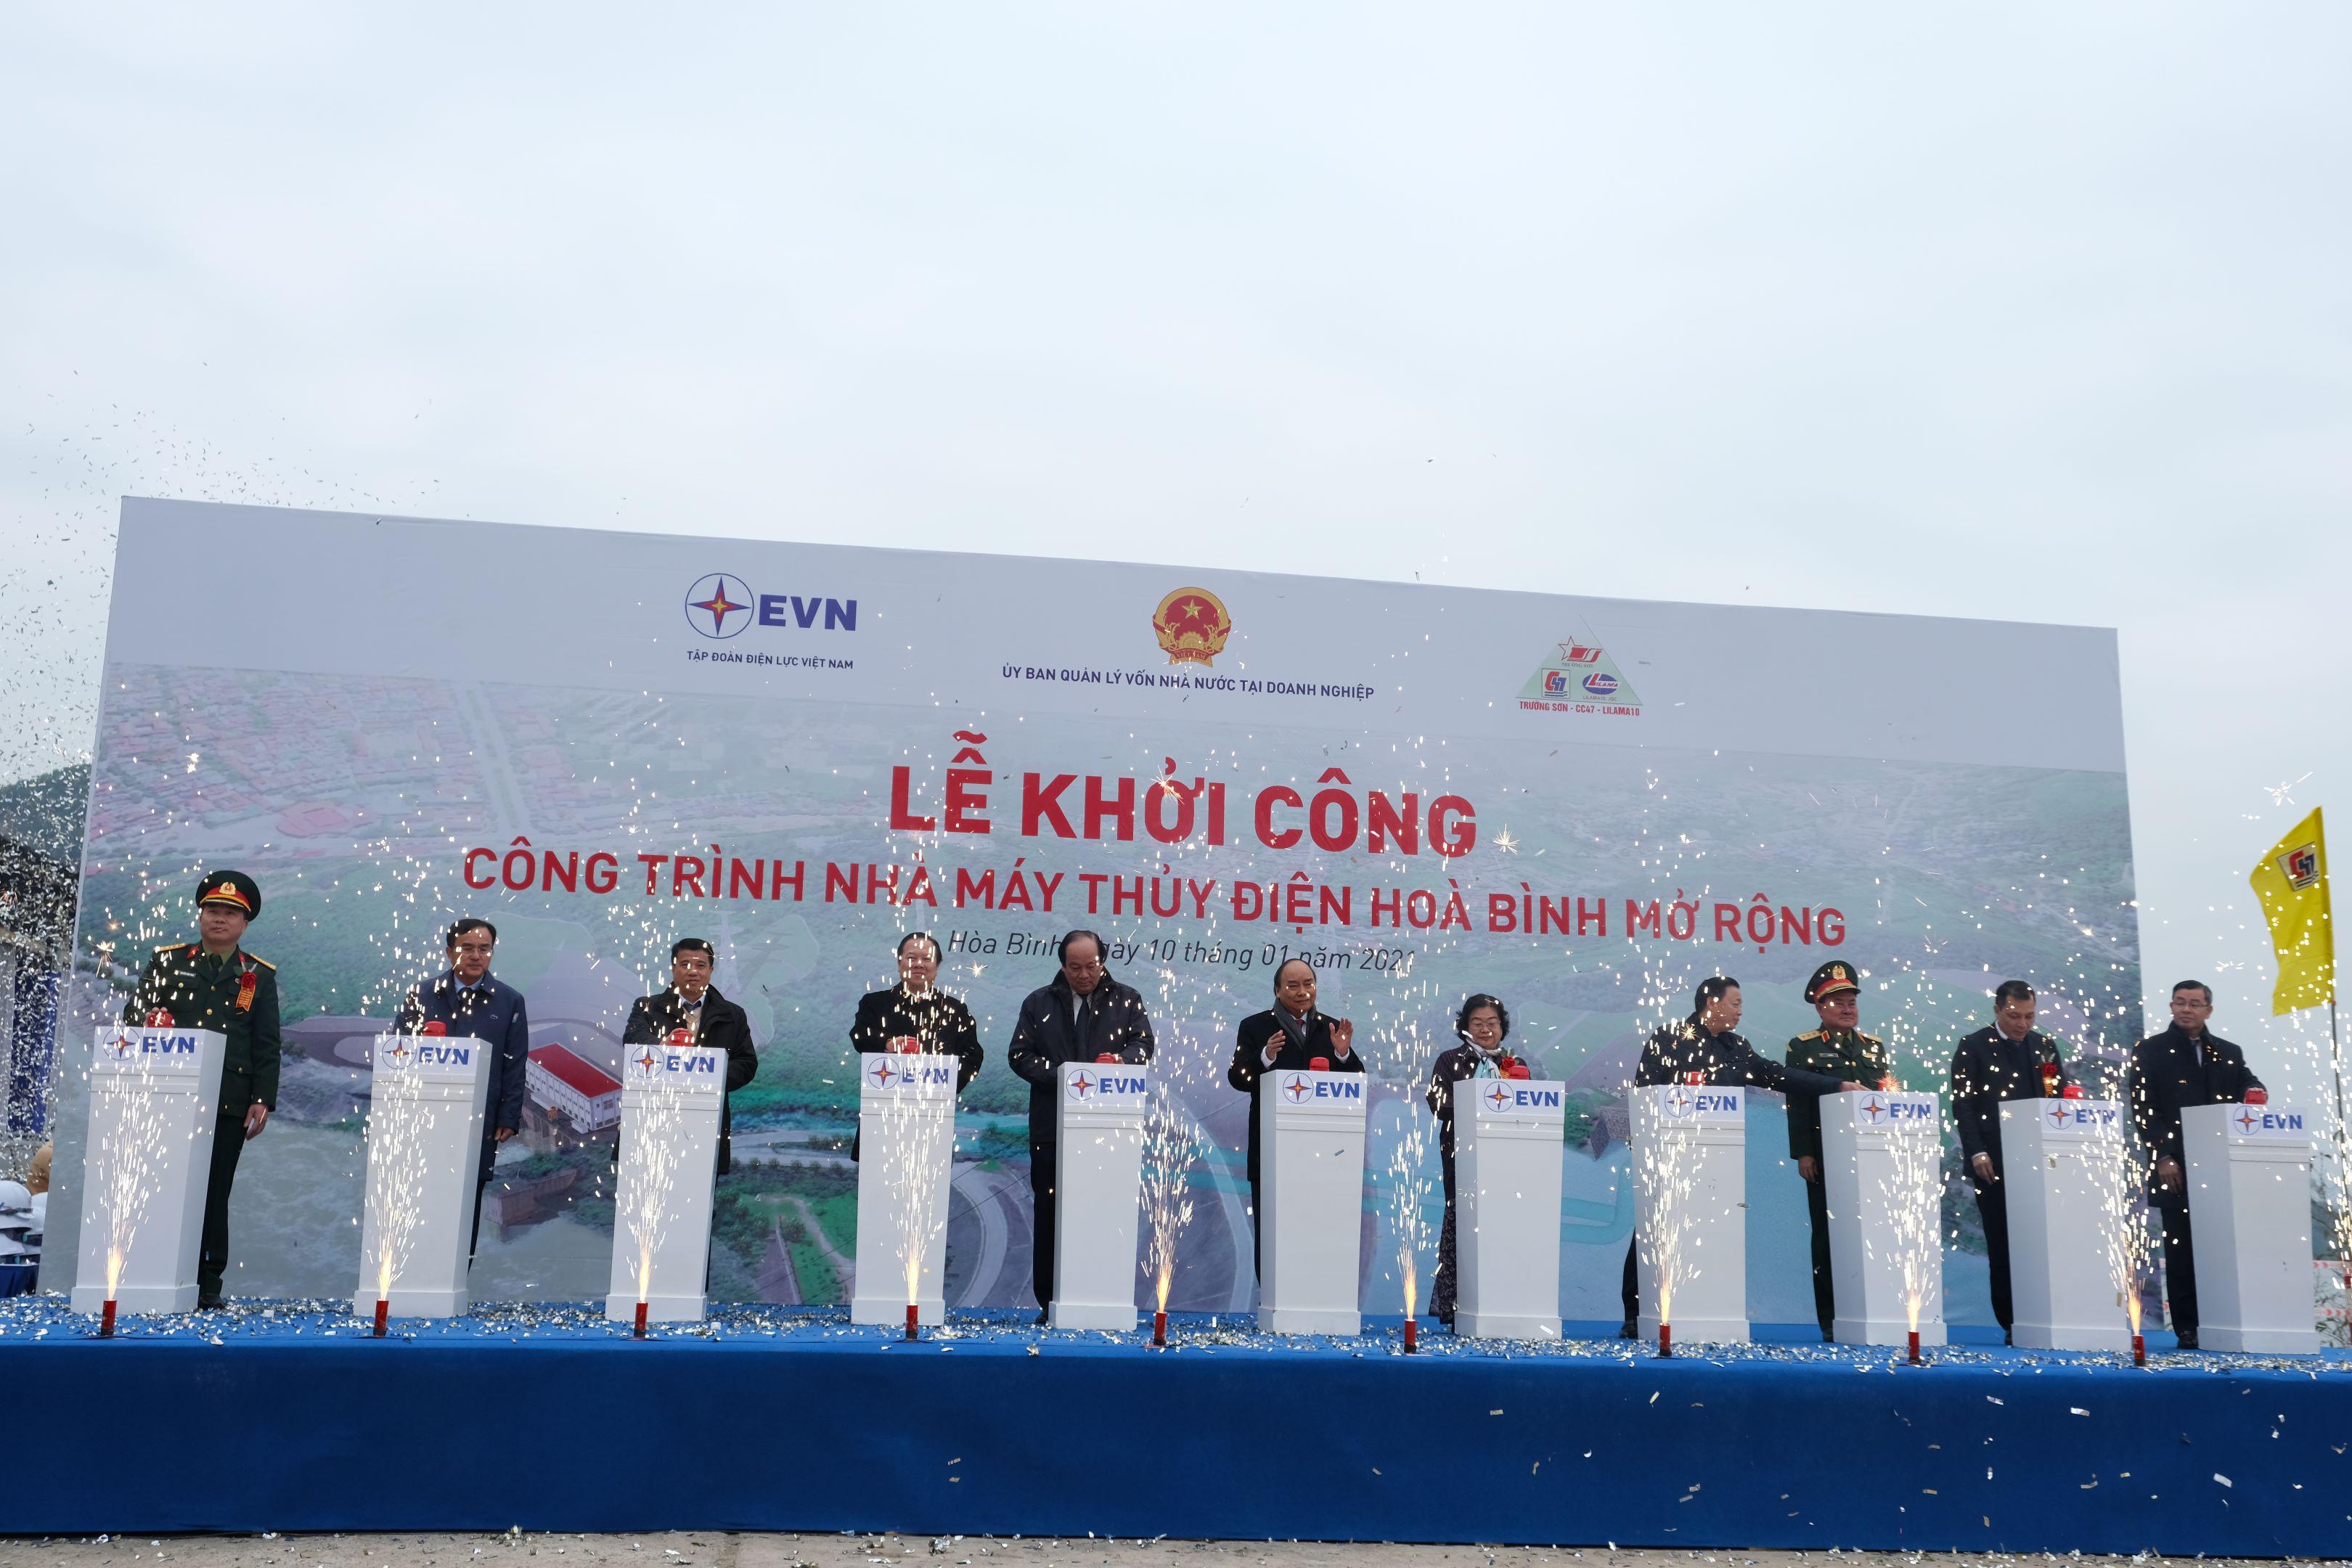 Vietcombank cấp khoản tín dụng 4.000 tỷ đồng tài trợ xây dựng công trình nhà máy thủy điện Hòa Bình mở rộng của Tập đoàn Điện lực Việt Nam - 1